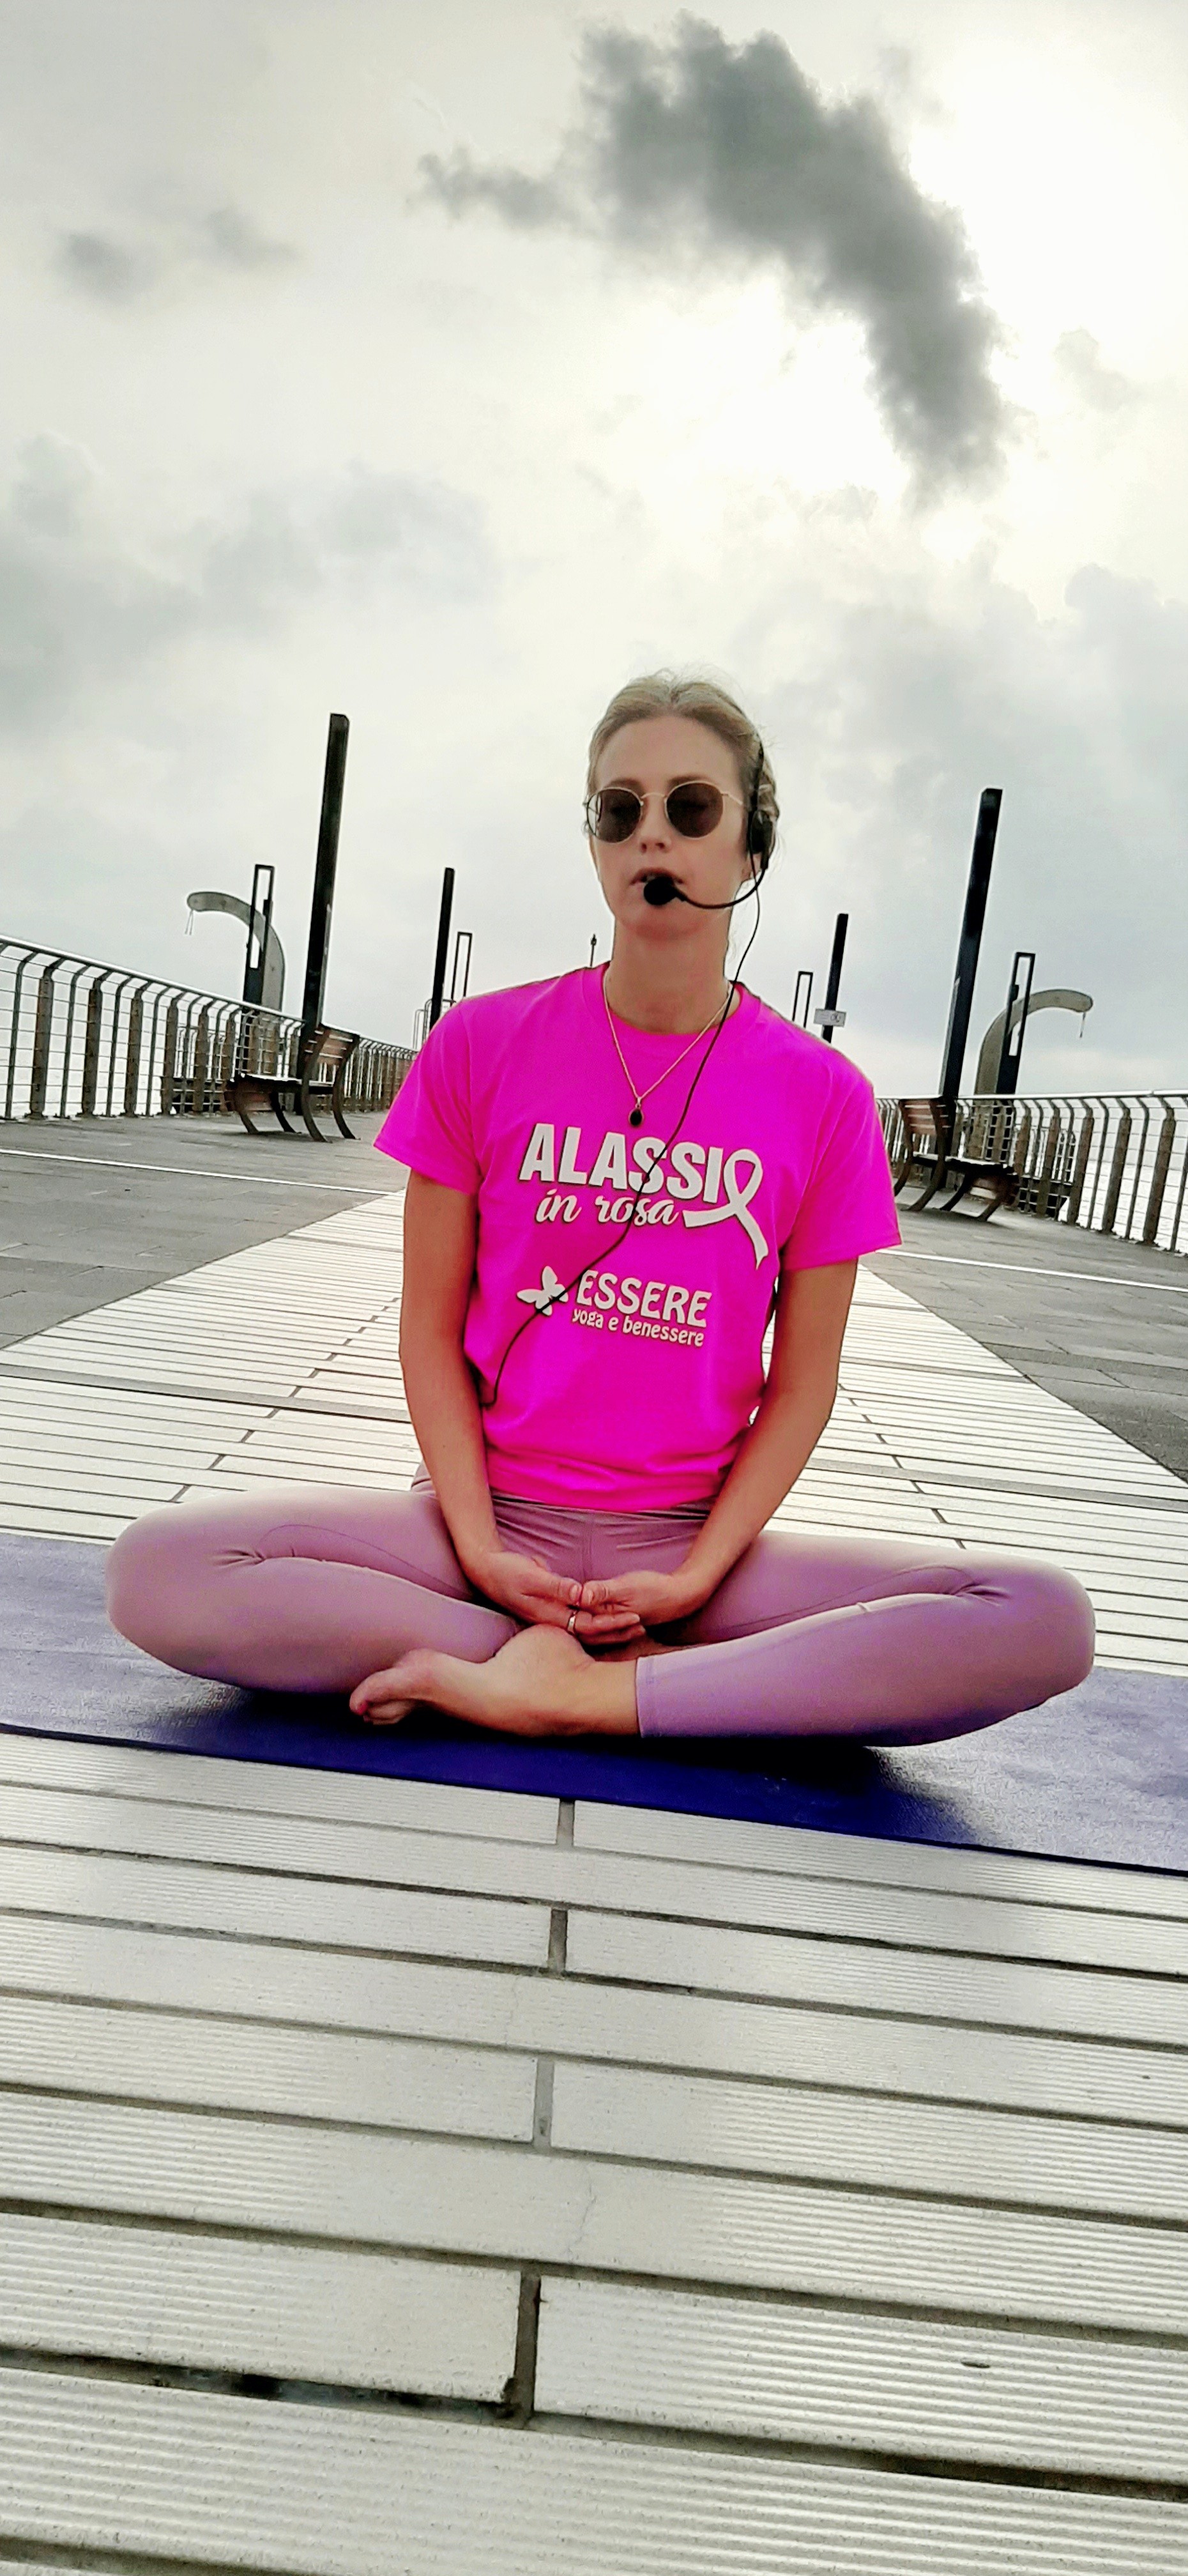 yoga-rosa-alassio-molo-gratuito-free-essere-benessere-lucia-ragazzi-esperienz-wellness-wellbeing-citta-salute-donne-prevenzione-airc-tumori-libertas-anas-liguria